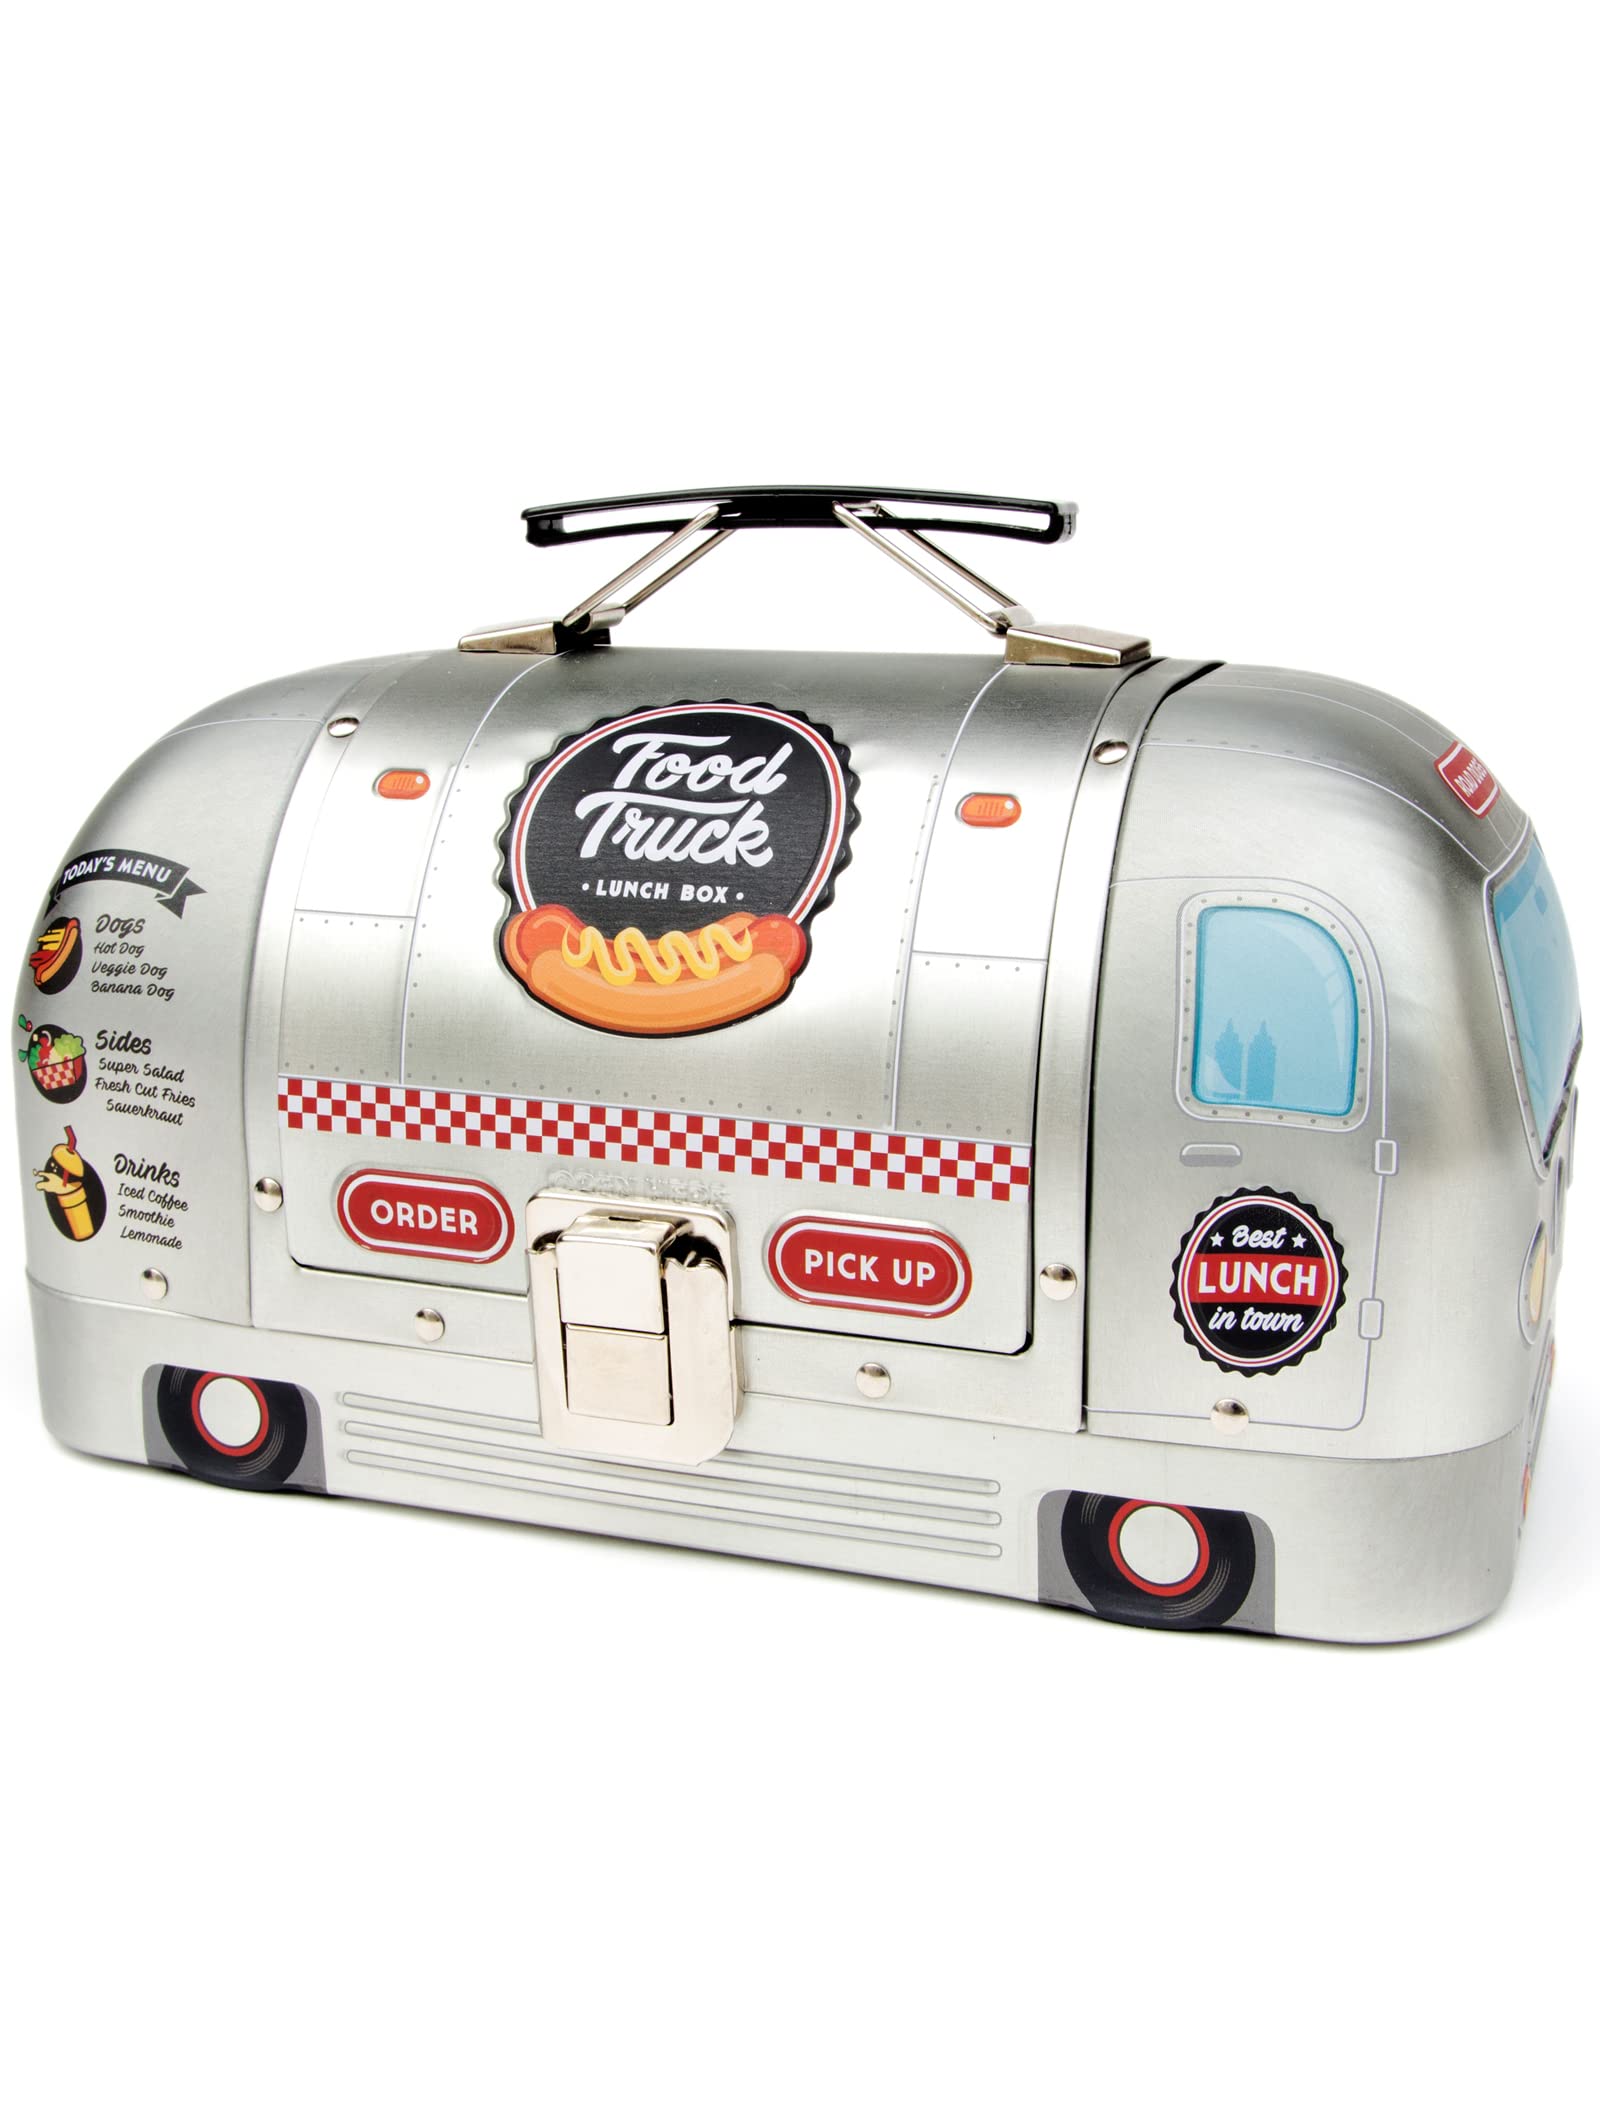 SUCK UK LKW-Lunchbox | LKW-förmiger Metall-Lunchbox-Lebensmittelbehälter | Neuartige Lunchbox aus Blech | Lustige Lunchtasche zur Aufbewahrung von Lebensmitteln | Retro-Lunchbehälter